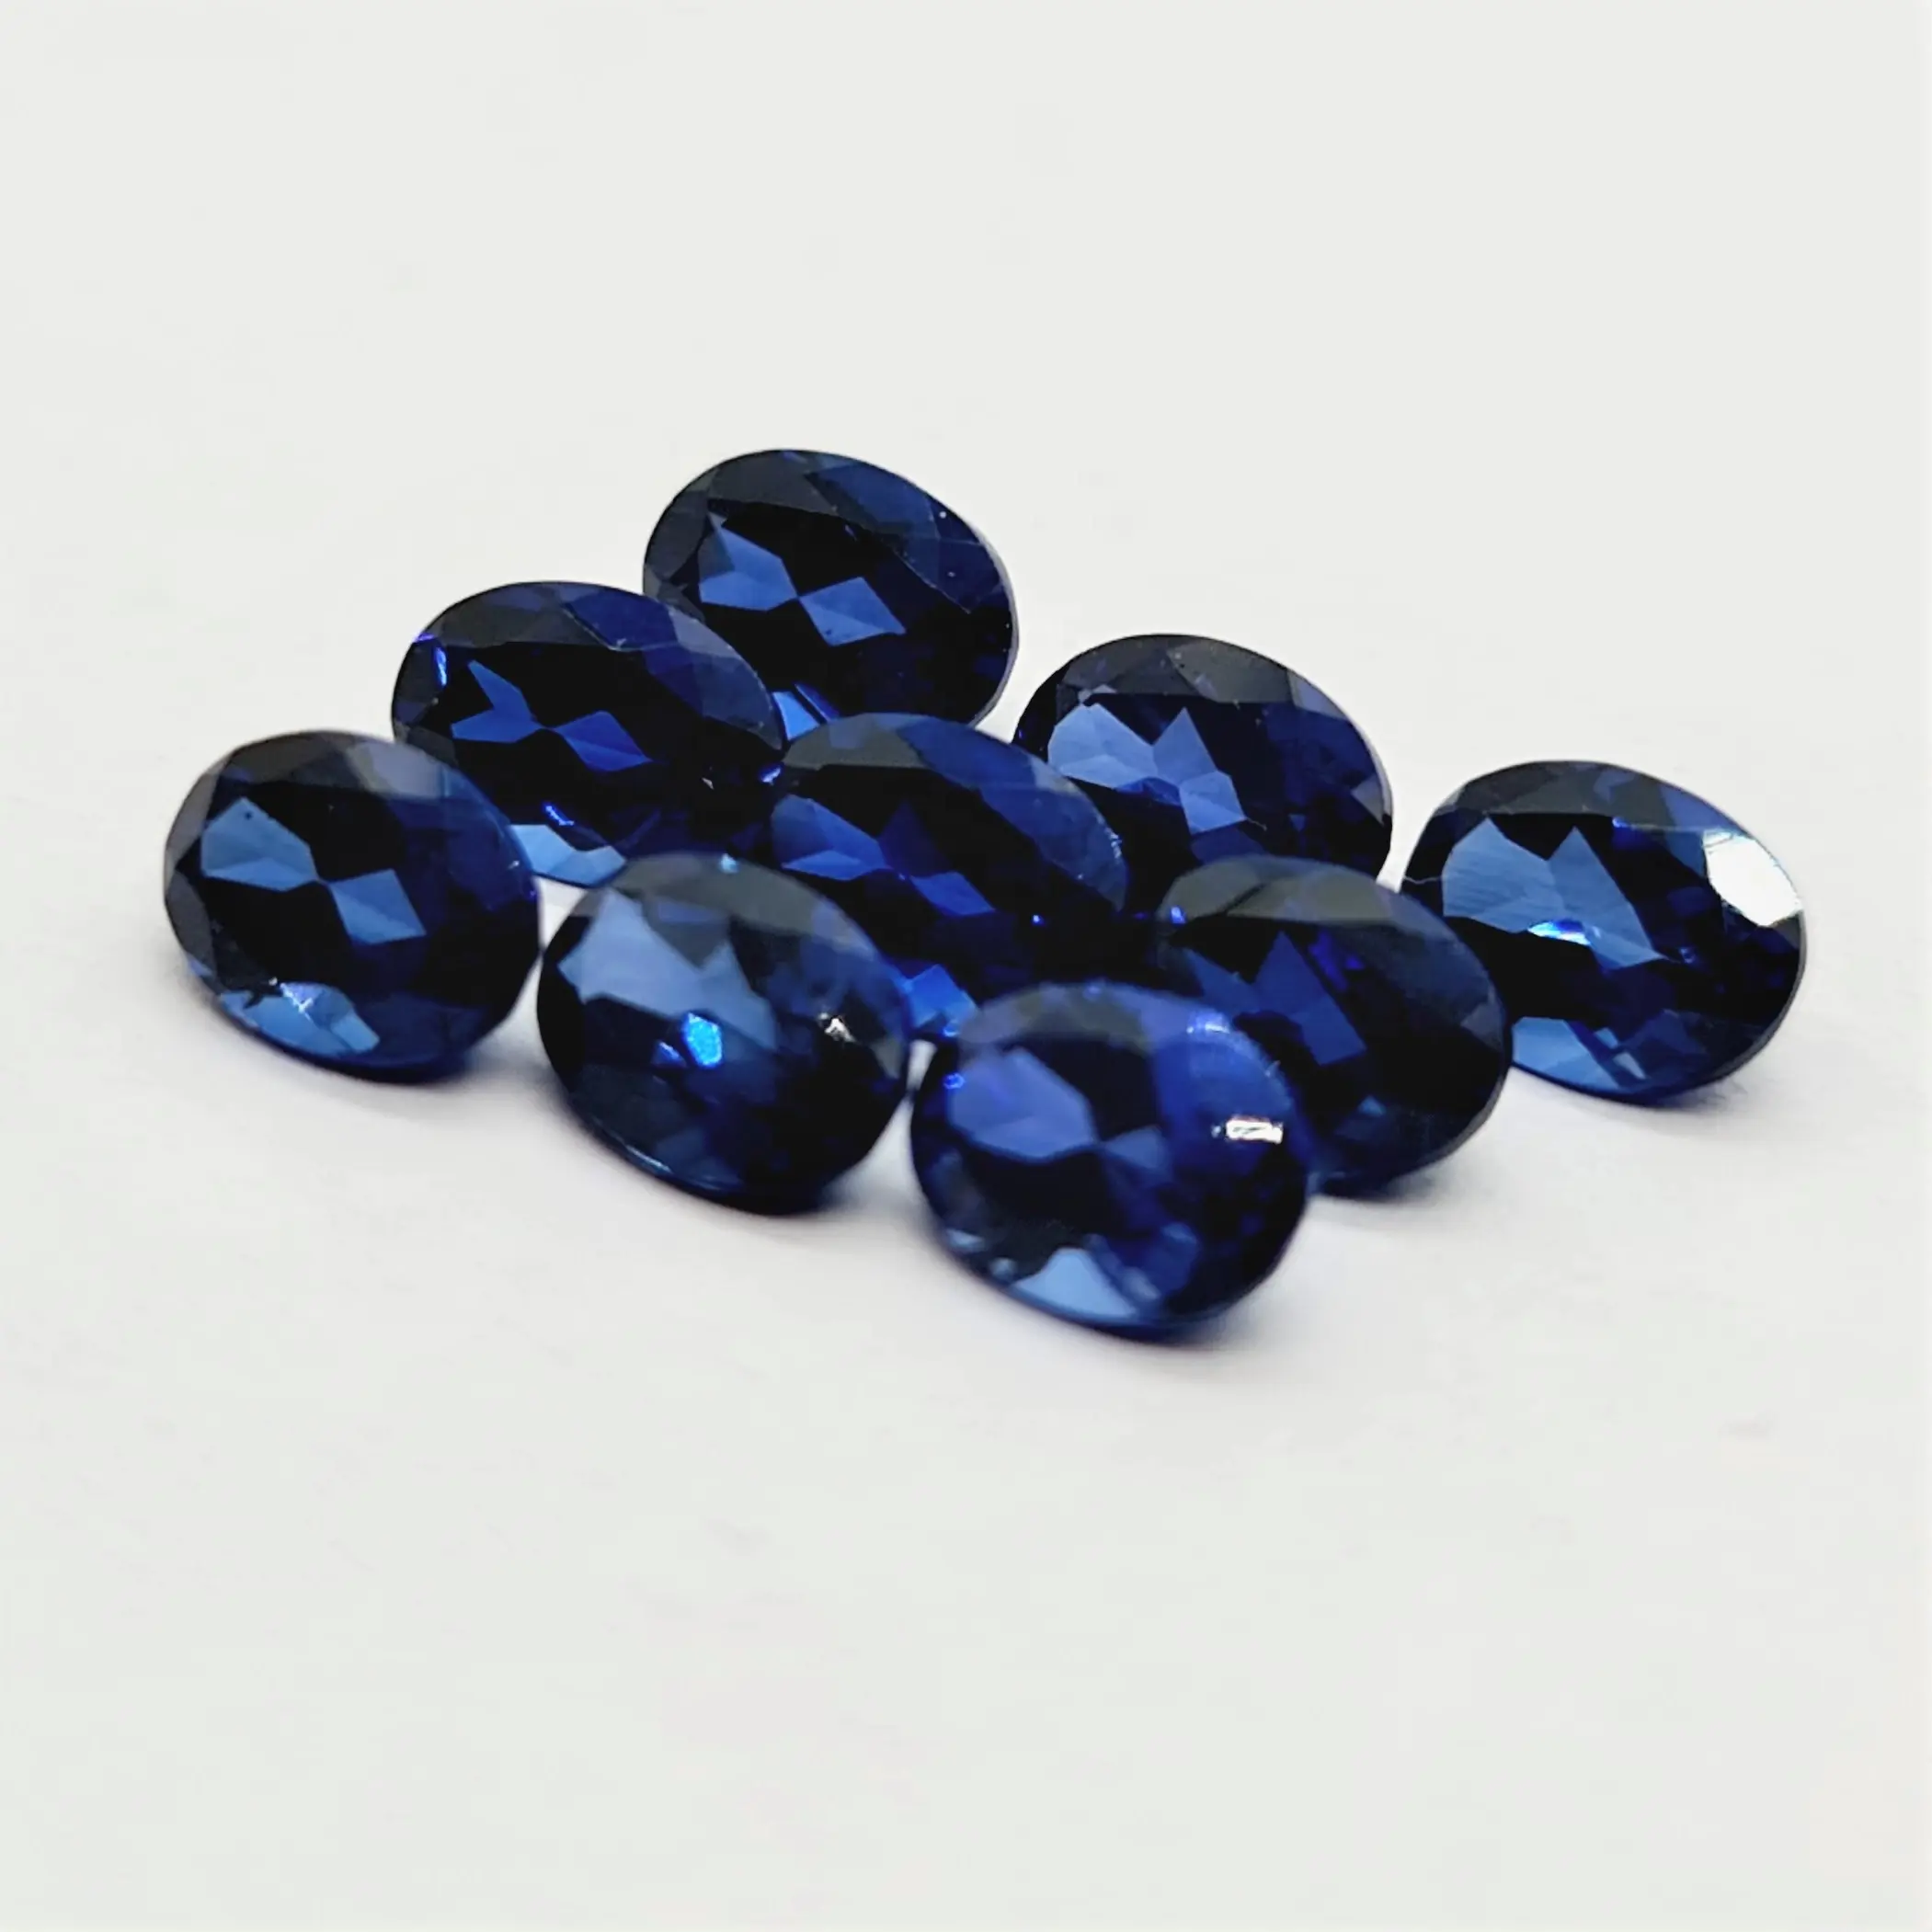 Piedra preciosa de zafiro azul hecha en laboratorio de corte ovalado, tamaños calibrados de corte ovalado y todas las formas y tamaños cortados en pedidos personalizados en venta al por mayor Pr